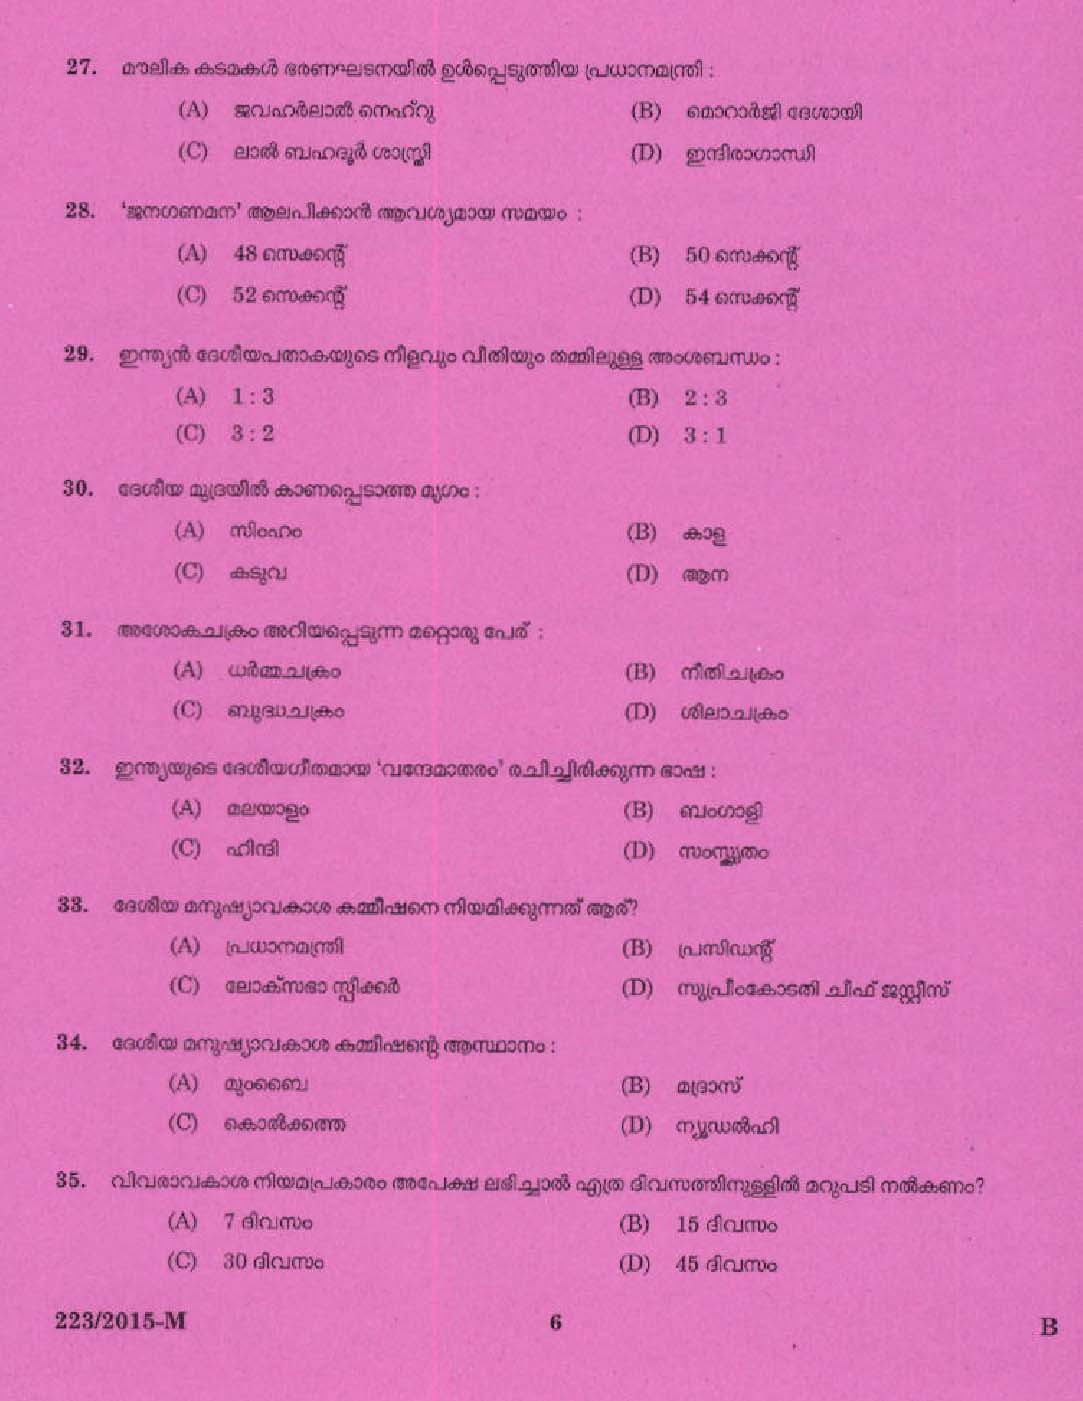 Kerala PSC Boat Driver Exam 2015 Question Paper Code 2232015 M 4